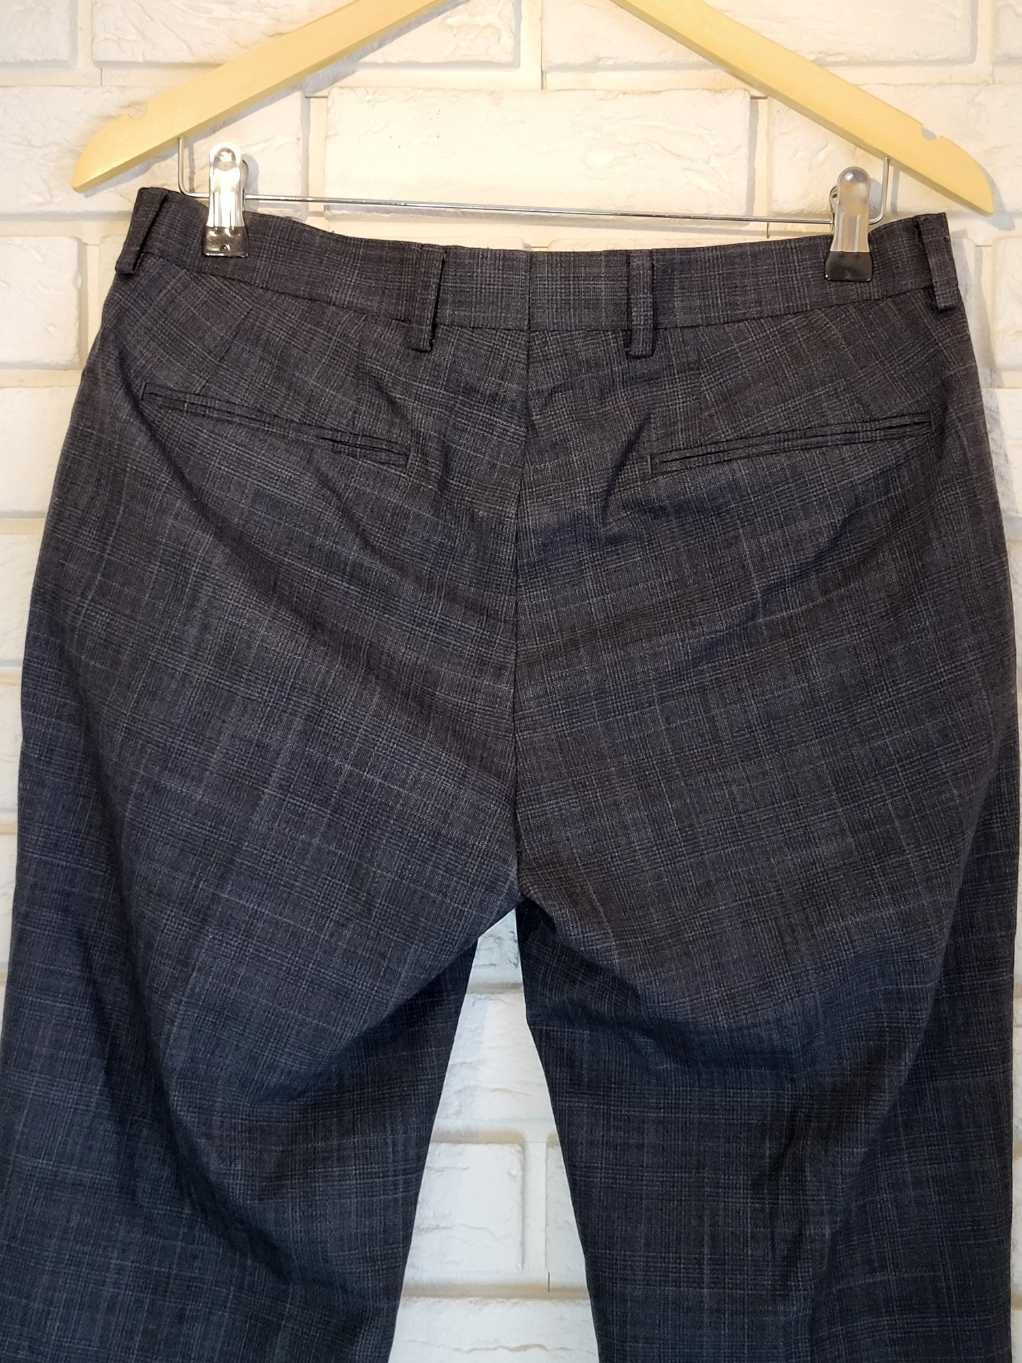 Spodnie męskie na kant z delikatną kratką od firmy Penguin,rozmiar 32.